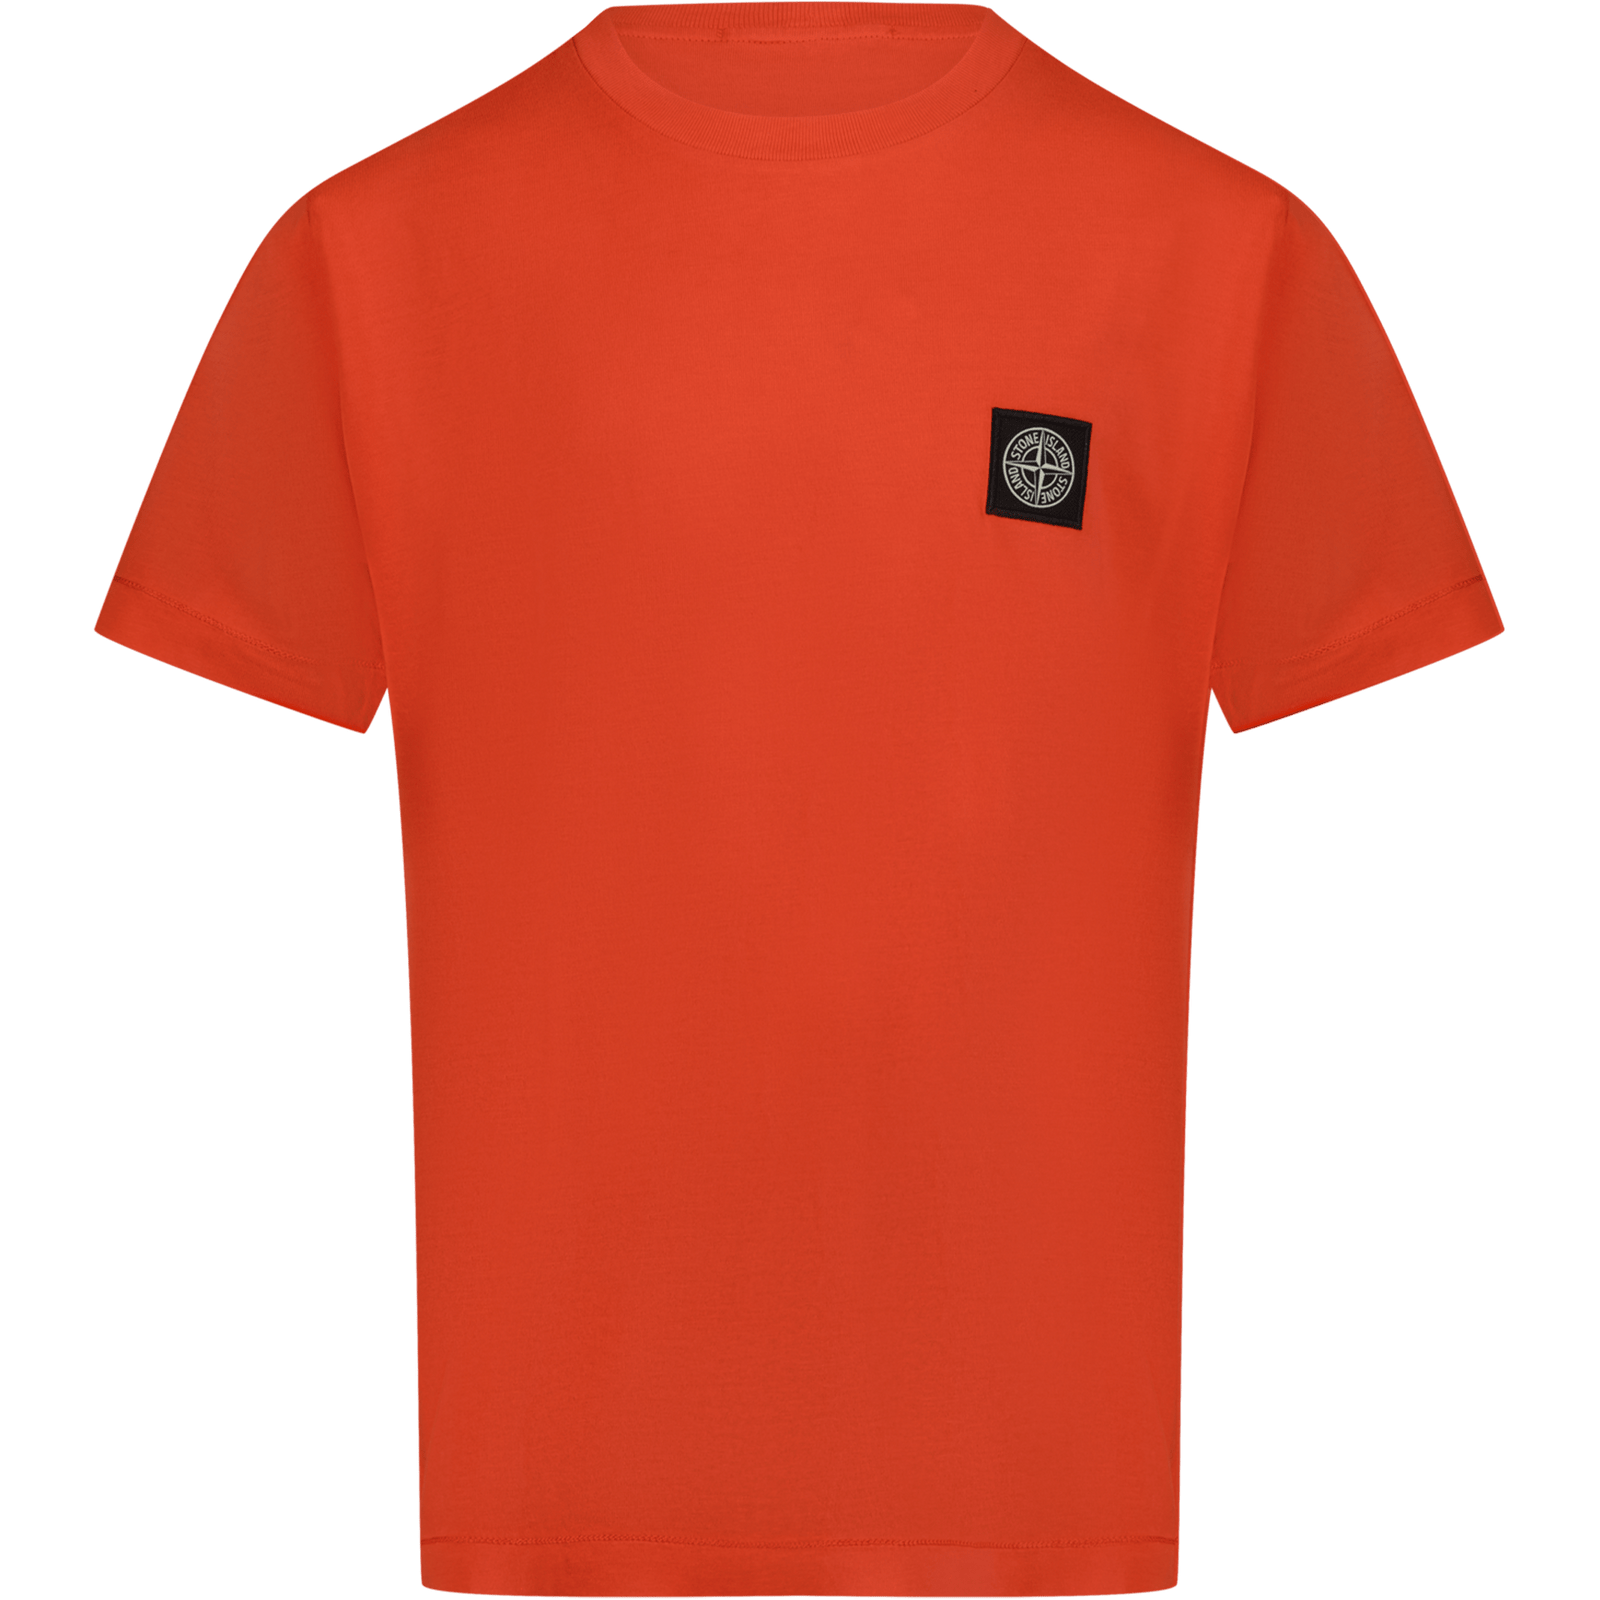 Stone Island Kinder Jongens T-Shirt Rood 2Y